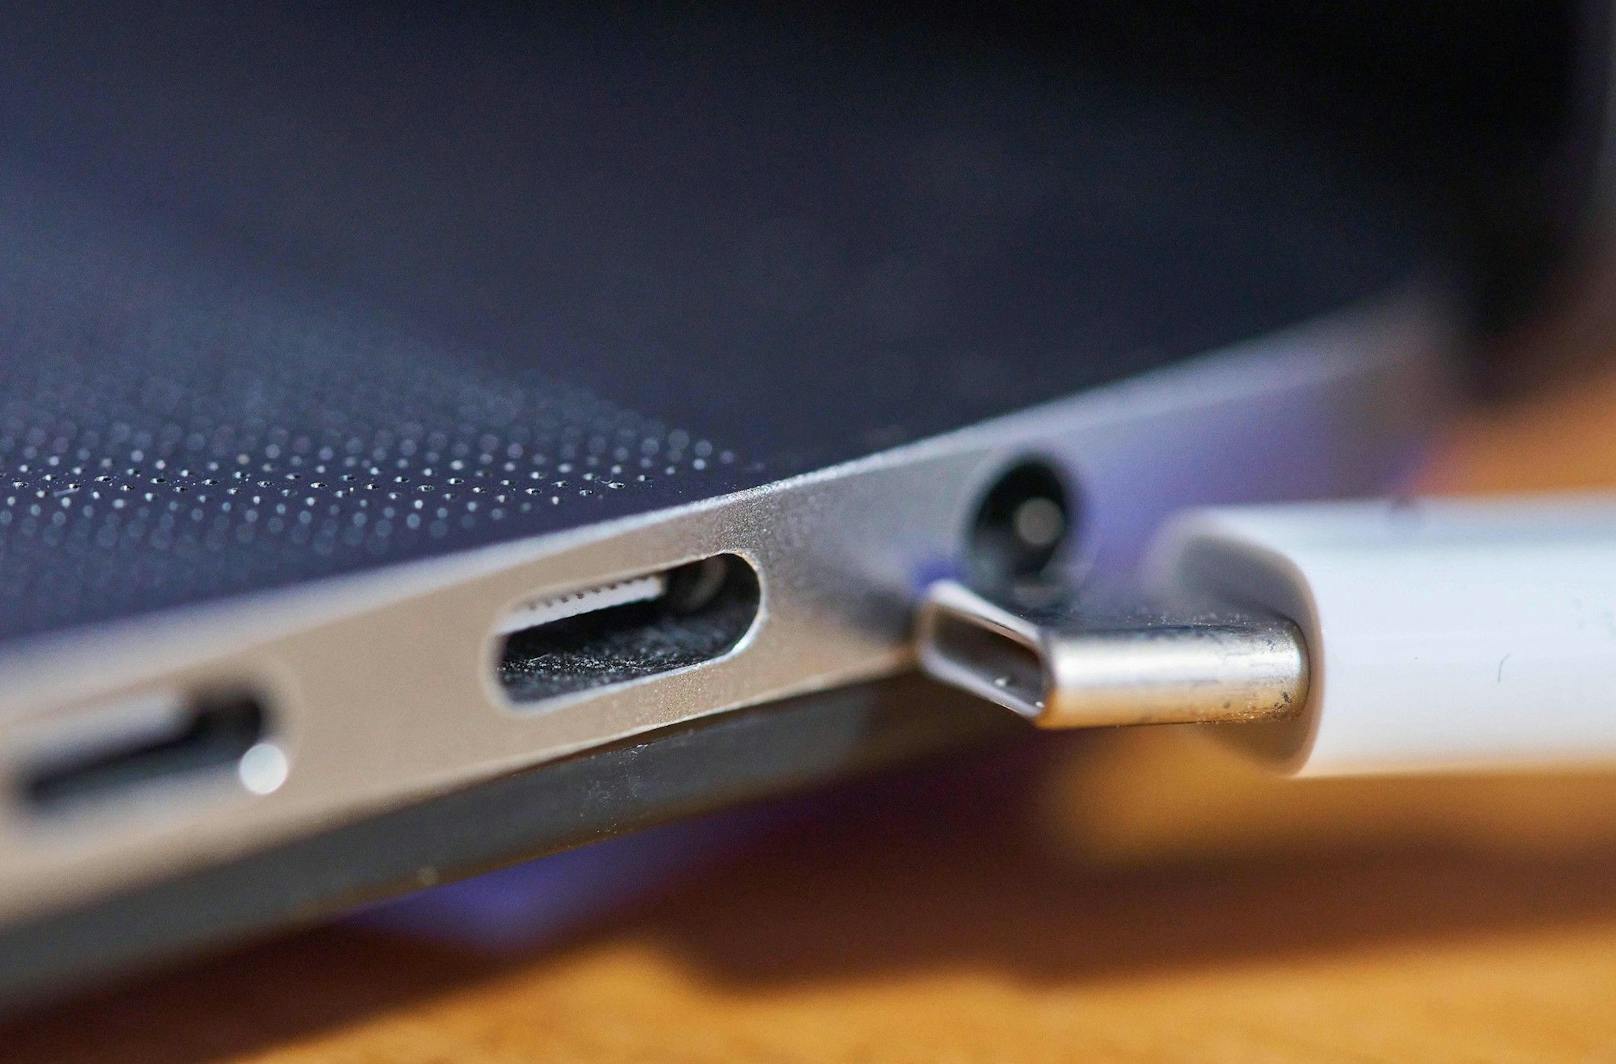 Derzeit existieren noch drei verschiedene Systeme: der Mikro-USB-Anschluss, die neuere Verbindung über USB-C sowie Lightning von Apple.